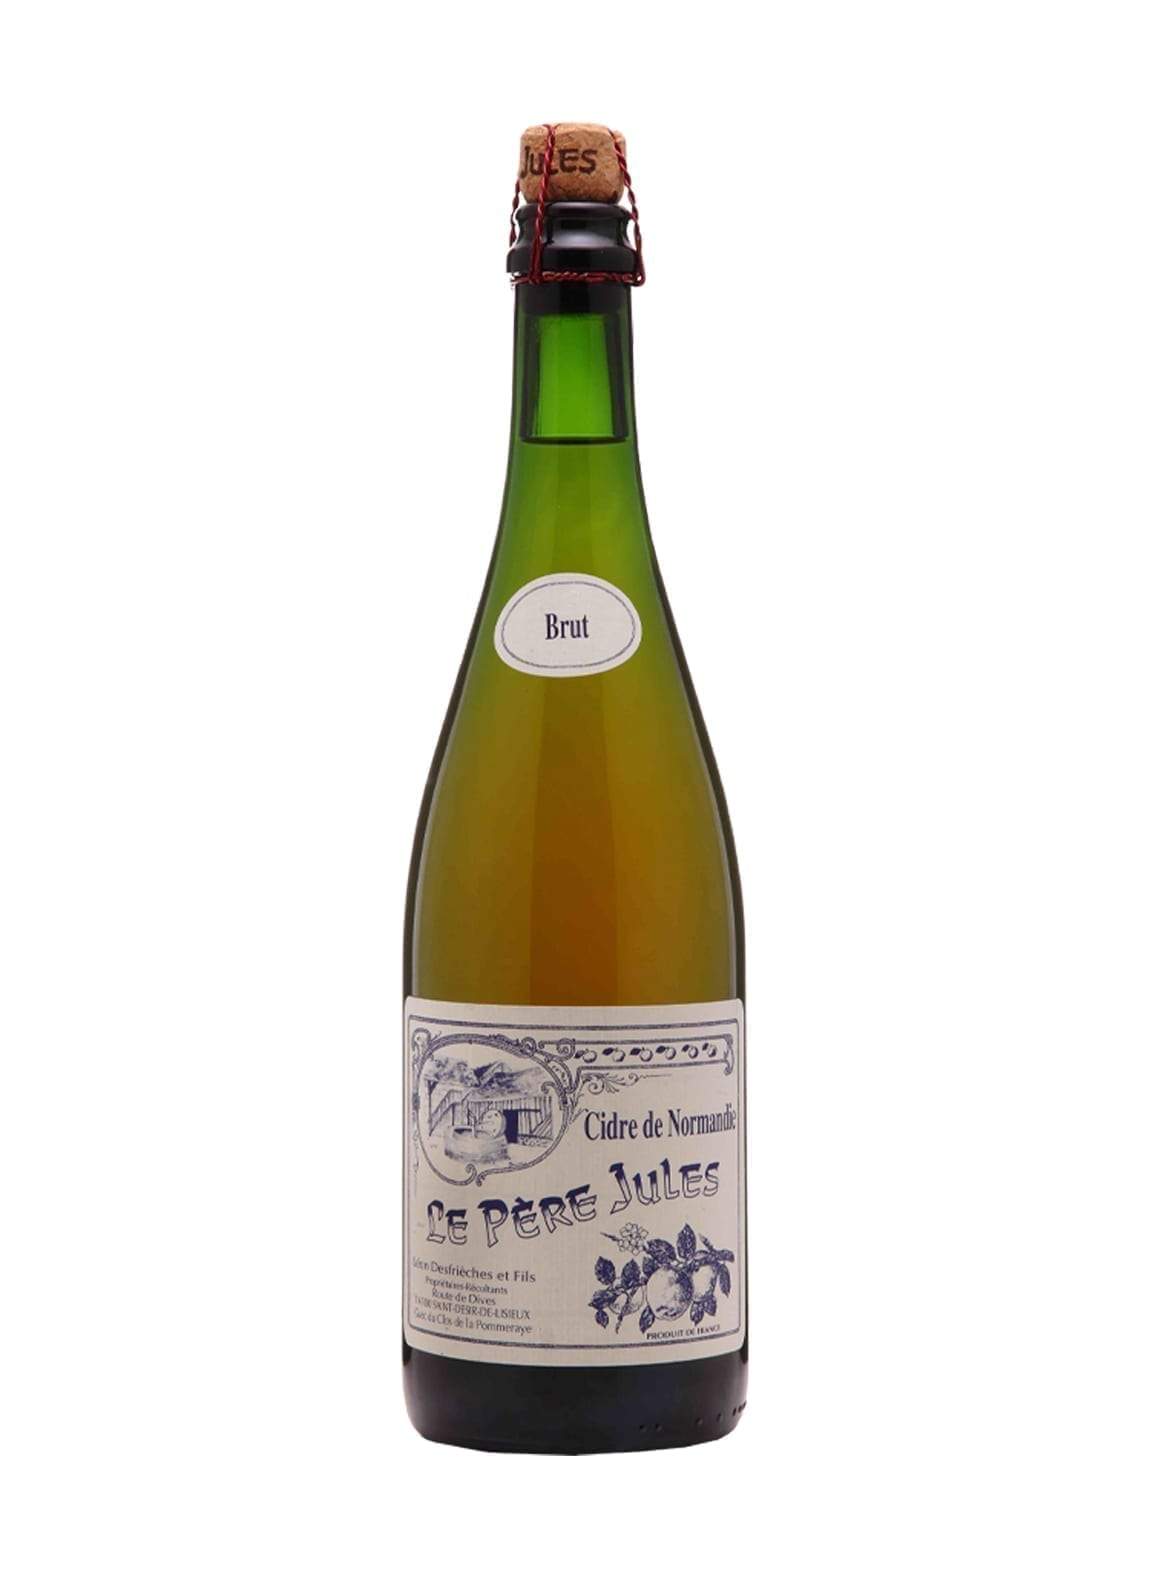 Pere Jules Cidre Brut Bouche (dry Apple Cider) Pays d'Auge 5% 750ml | Hard Cider | Shop online at Spirits of France